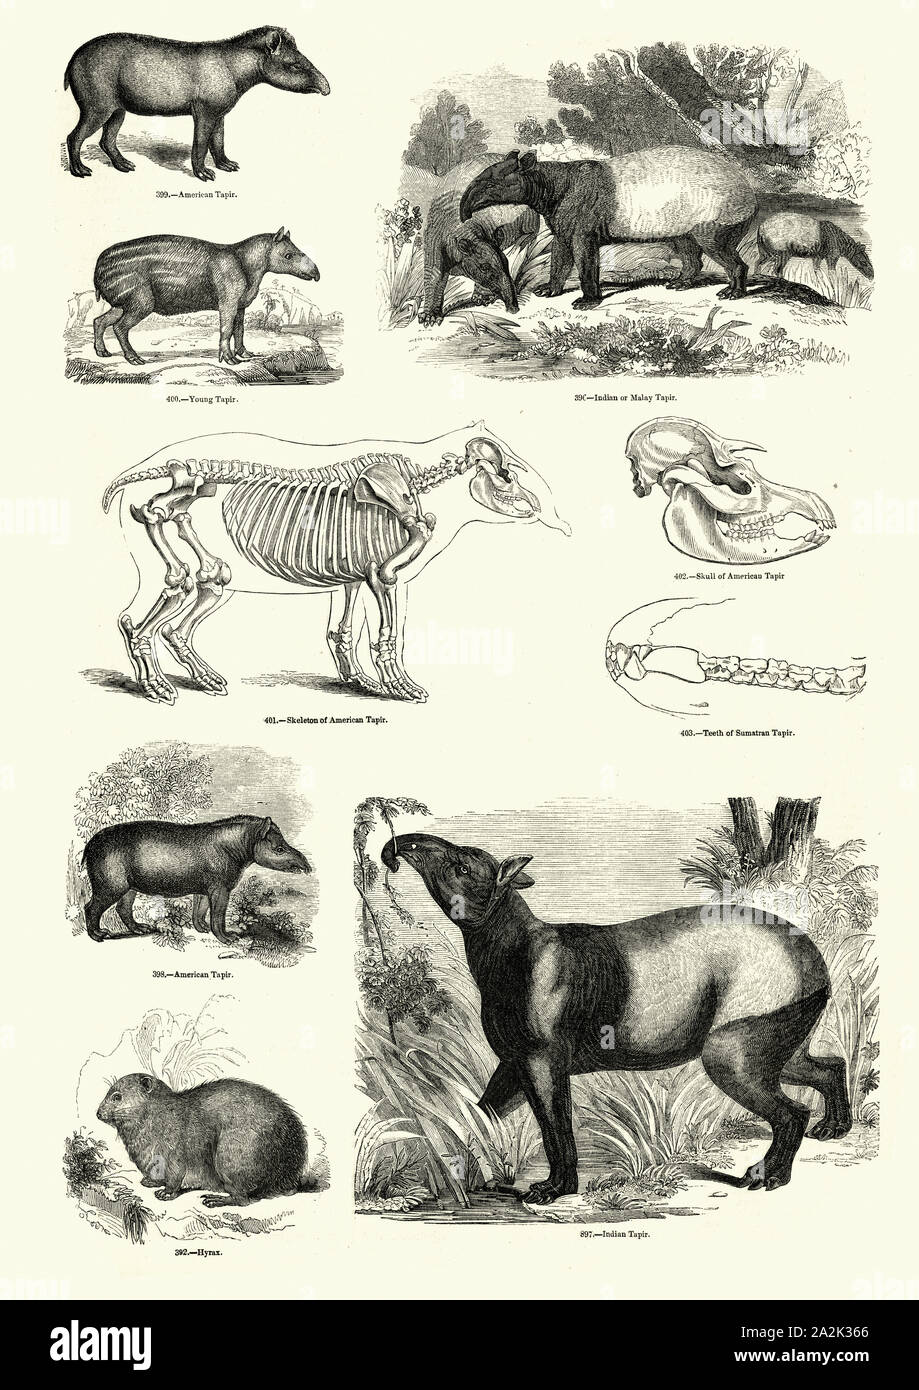 Vintage engraving of South American tapir (Tapirus terrestris), Malayan  tapir (Tapirus indicus) and Hyrax, 19th Century Stock Photo - Alamy